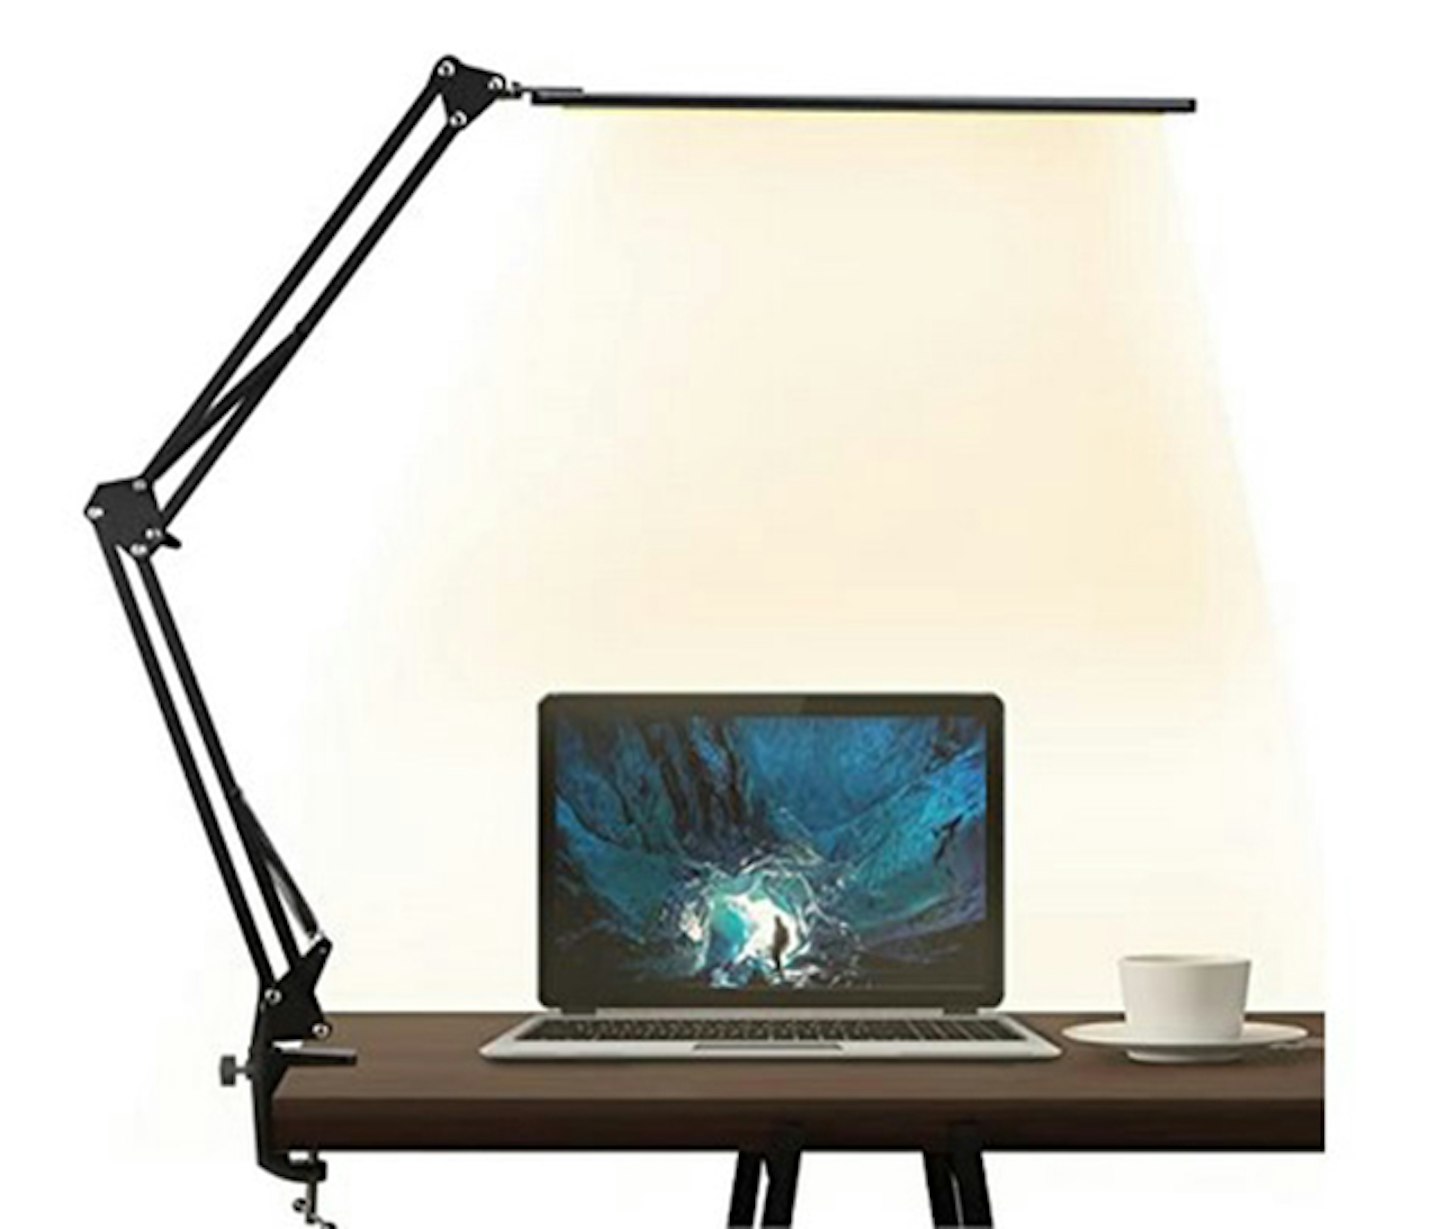 Brightowner LED Desk Lamp